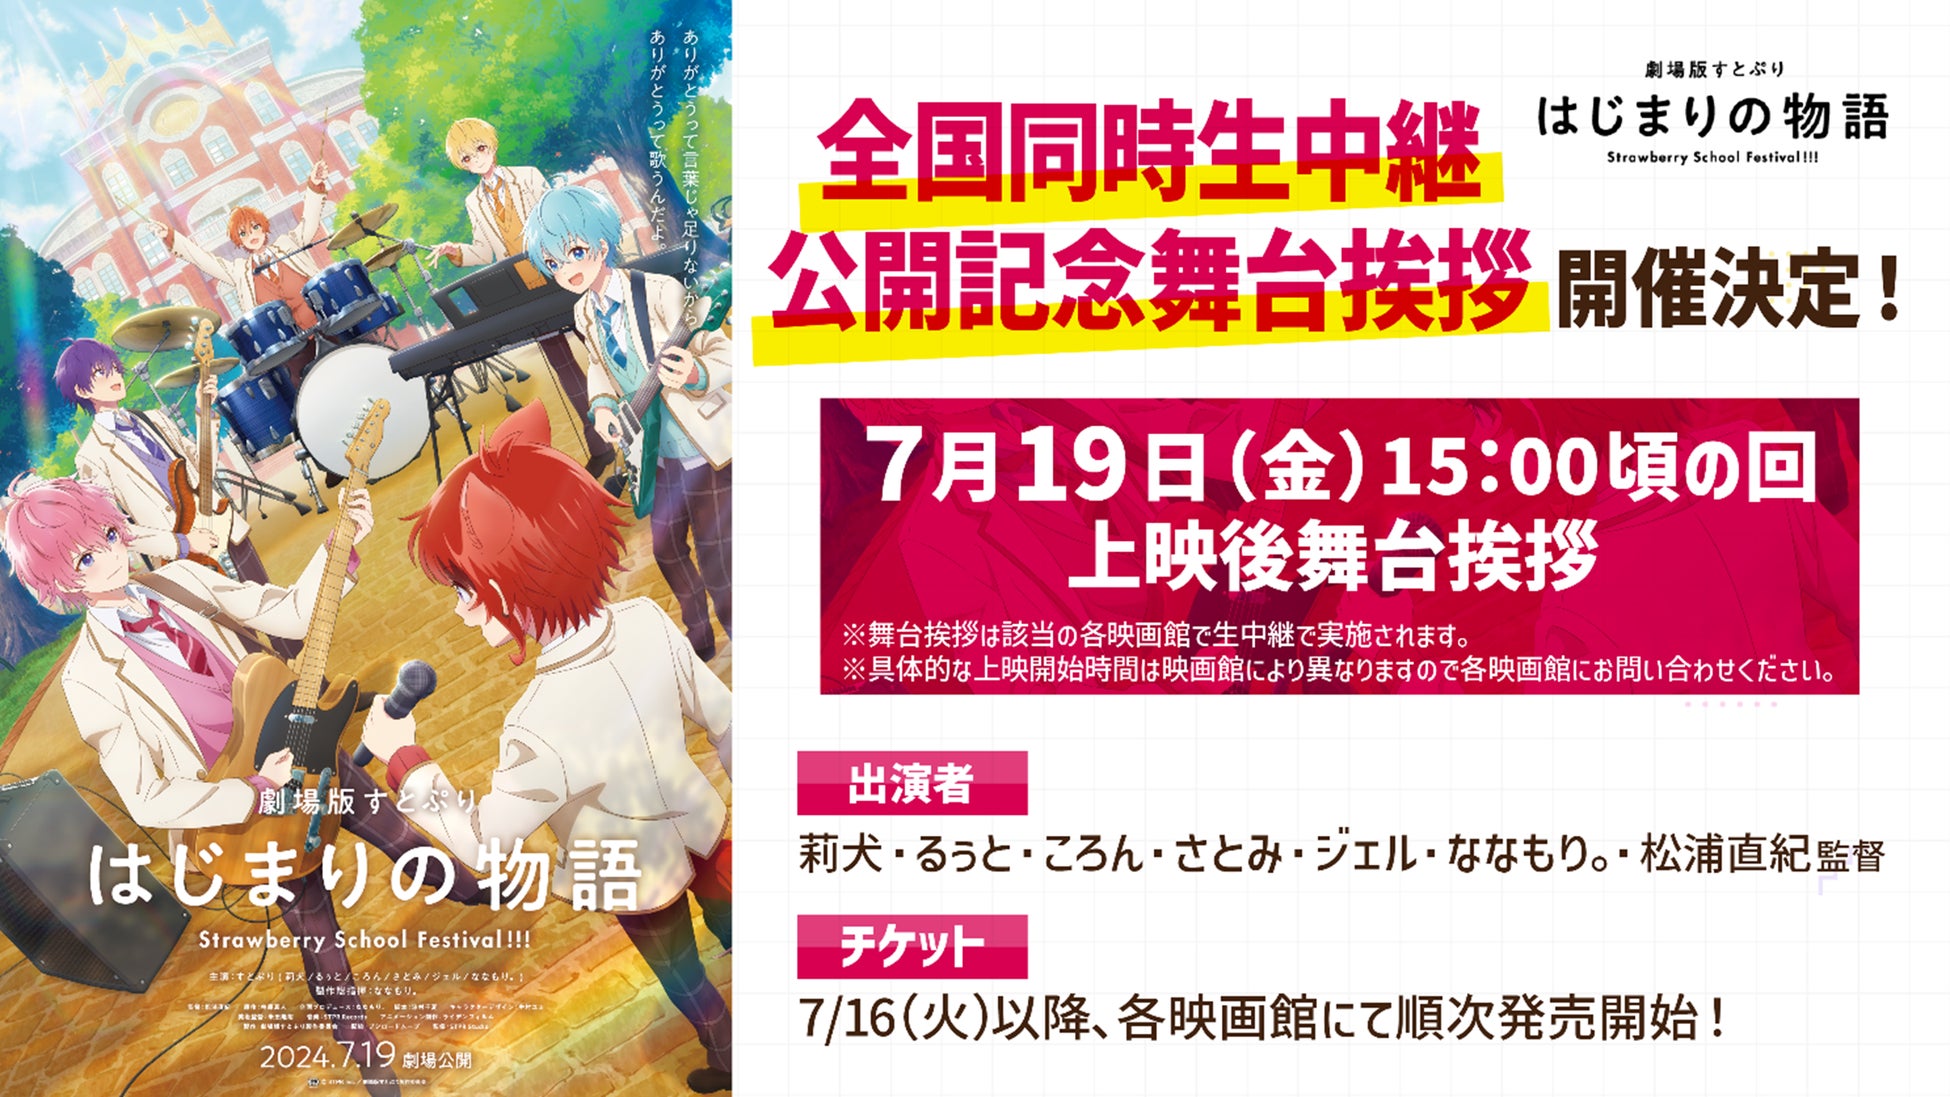 【岡山大学】岡山大学交響楽団 Summer Concert 2024〔7/20,土 岡山シンフォニーホール〕